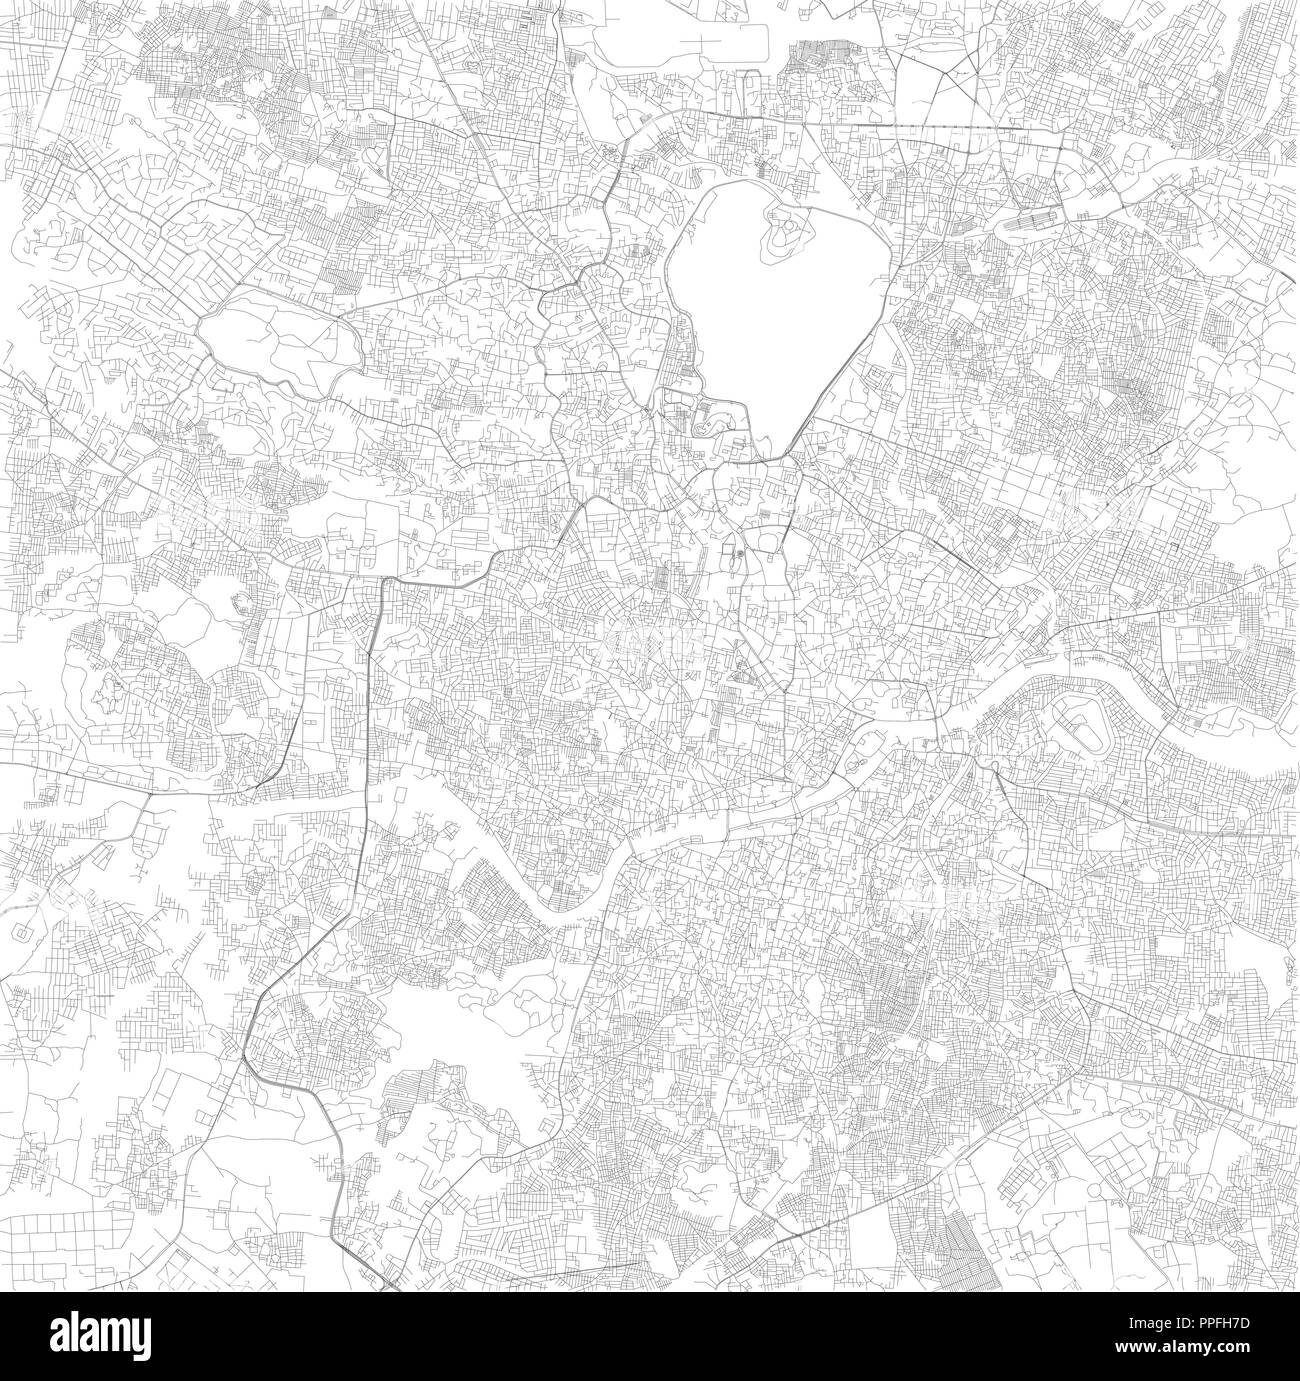 Plan de Hyderabad, Telangana, satellite, carte en noir et blanc. Annuaire de la rue et plan de la ville. L'Inde Illustration de Vecteur